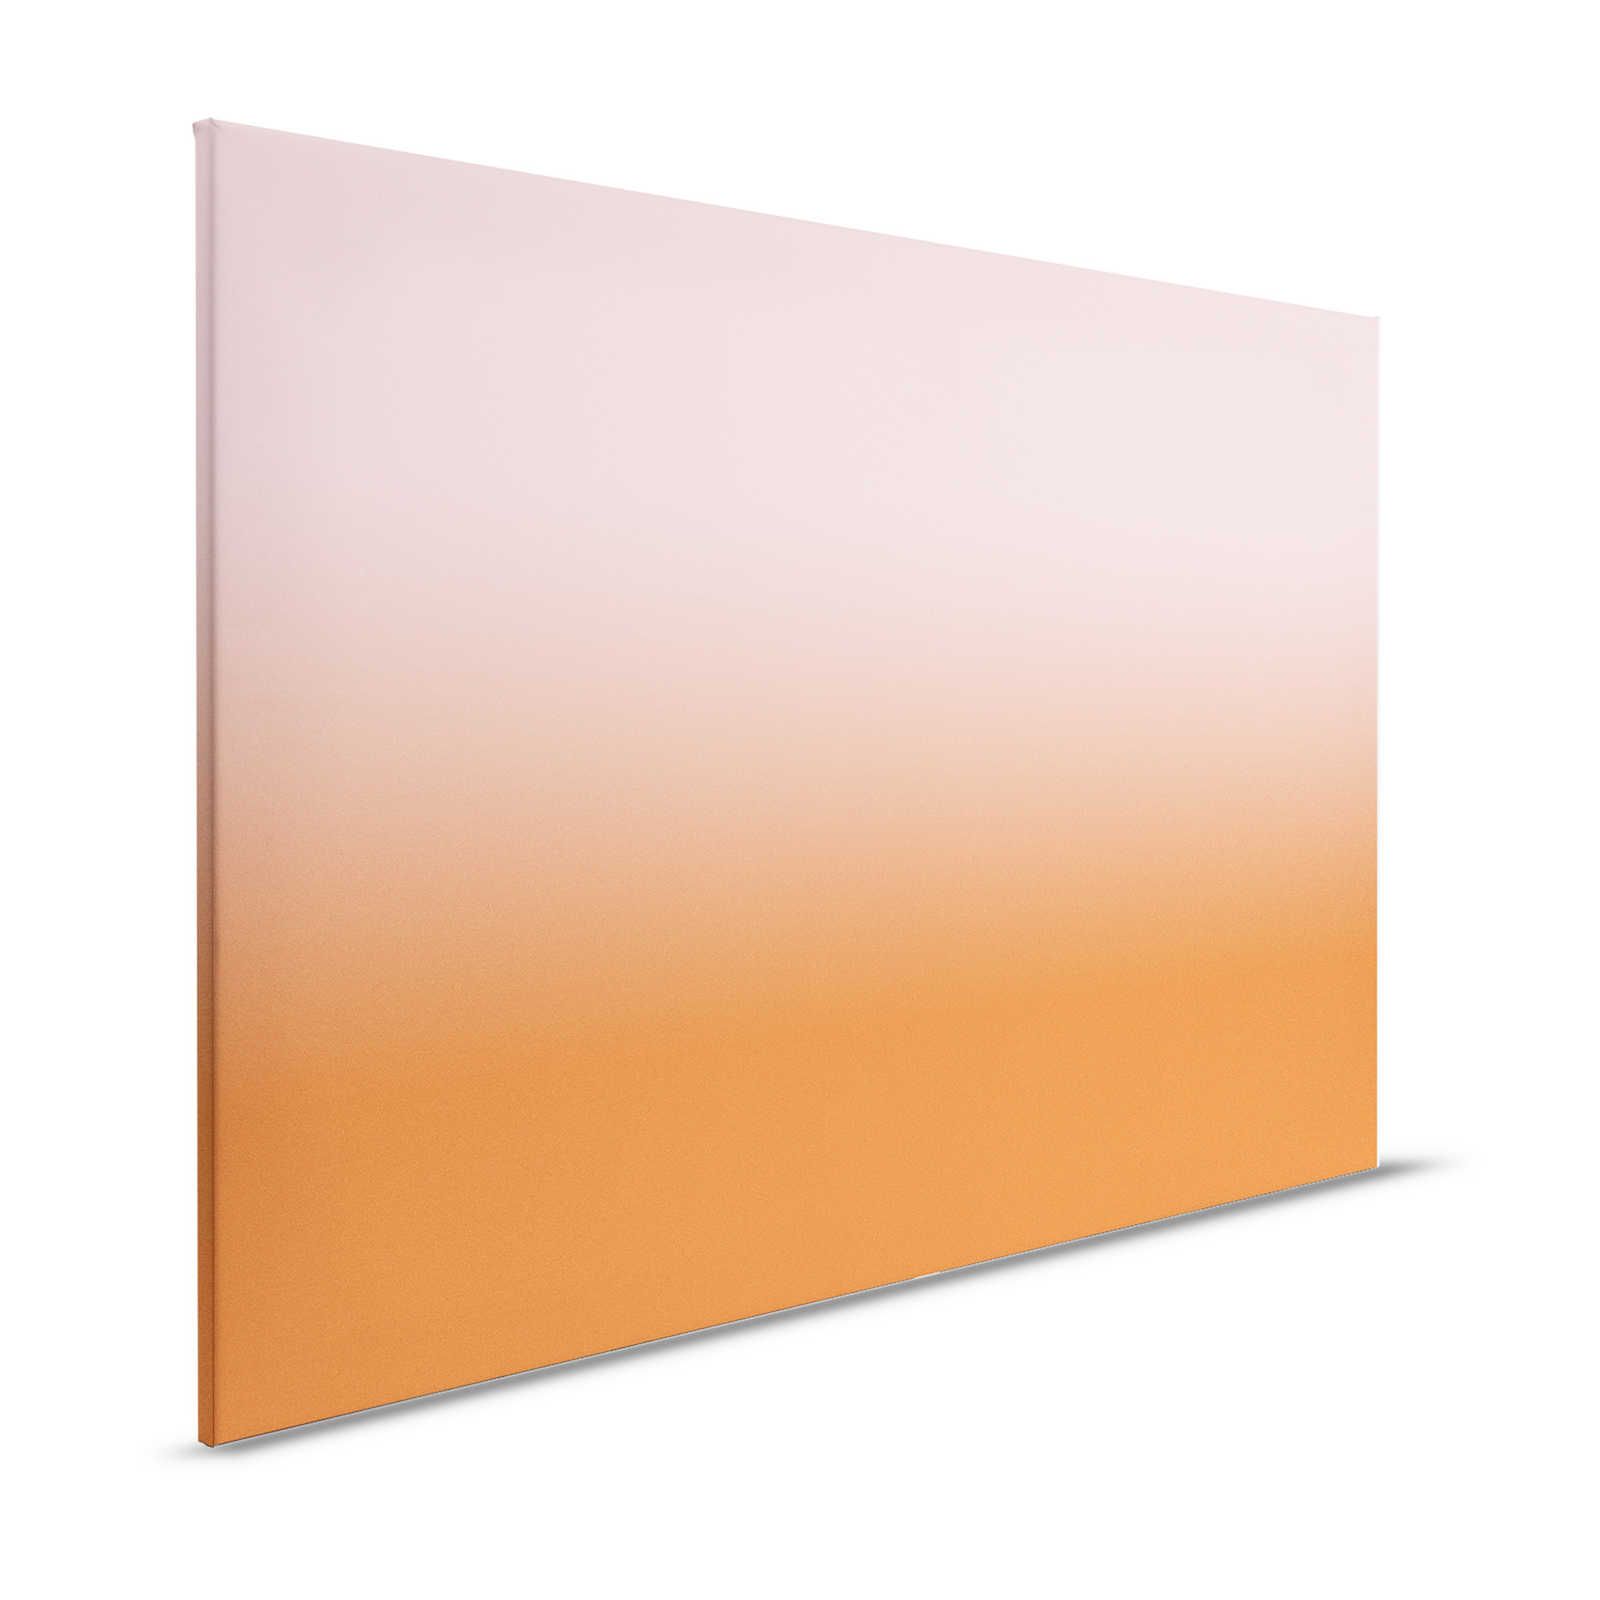         Colour Studio 4 - Ombre Canvas Painting Gradient Pink & Orange - 1.20 m x 0.80 m
    